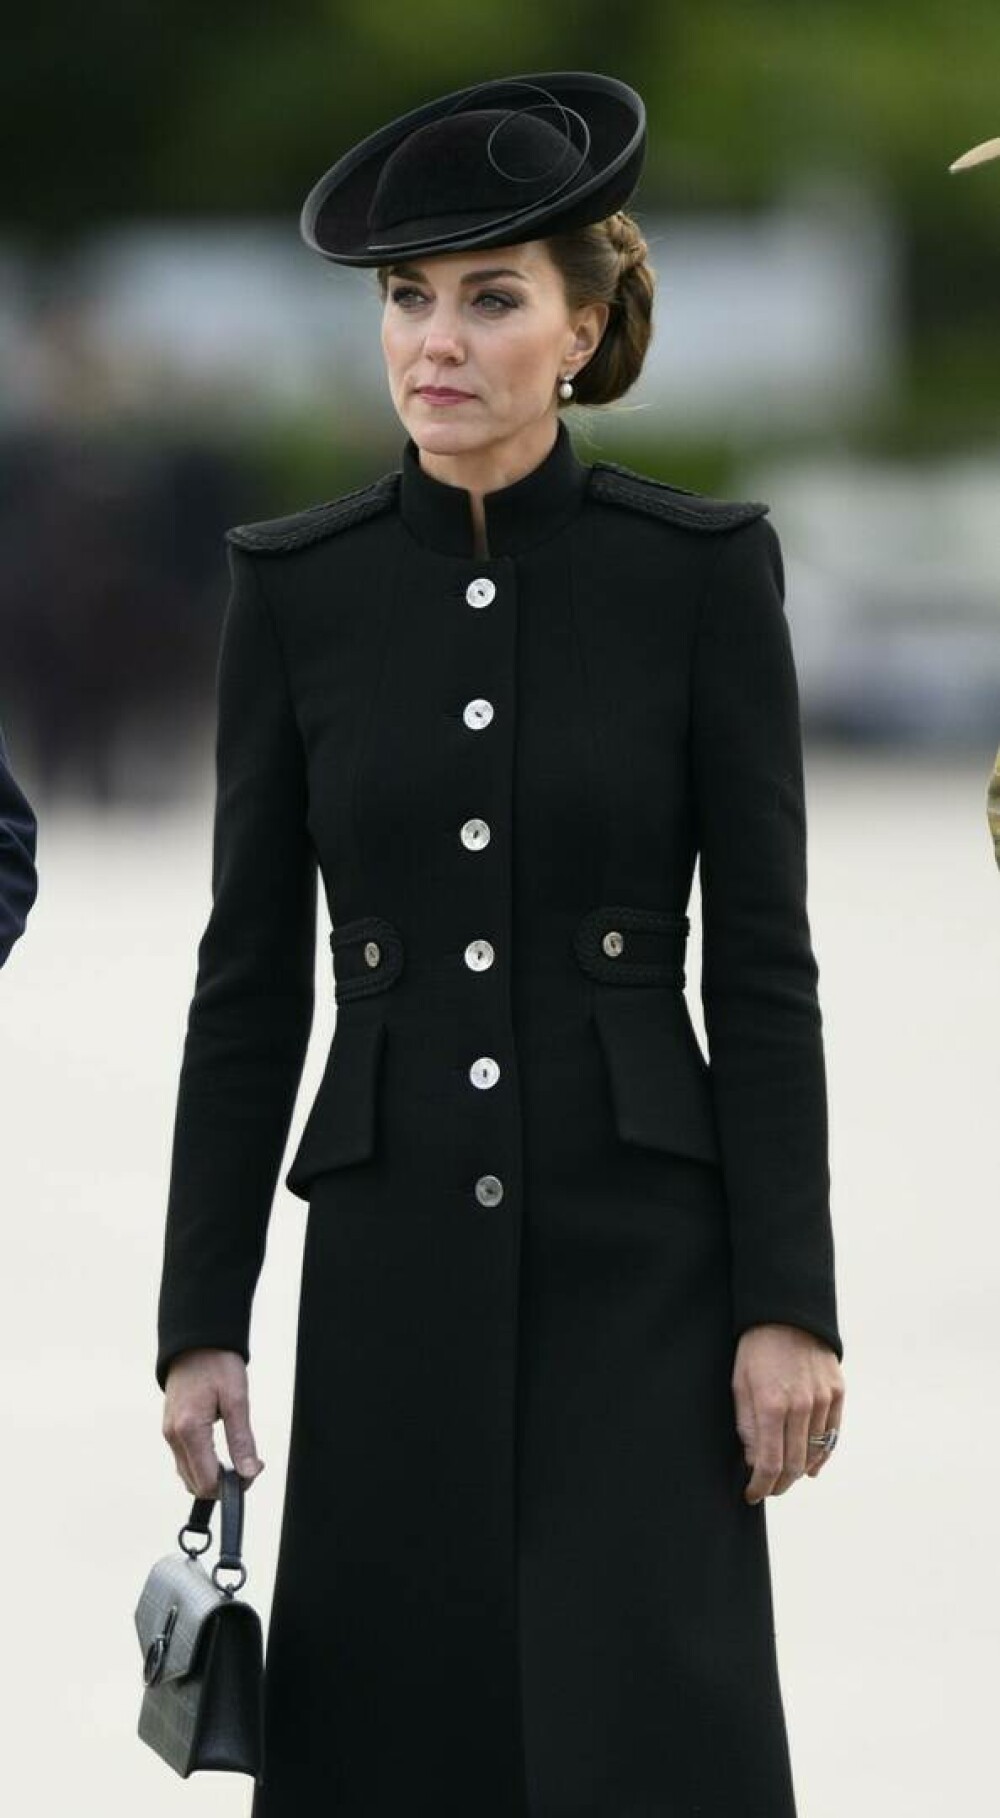 Inspirație în modă: Ținute marca Kate Middleton purtate de prințesă în această toamnă | GALERIE FOTO - Imaginea 1